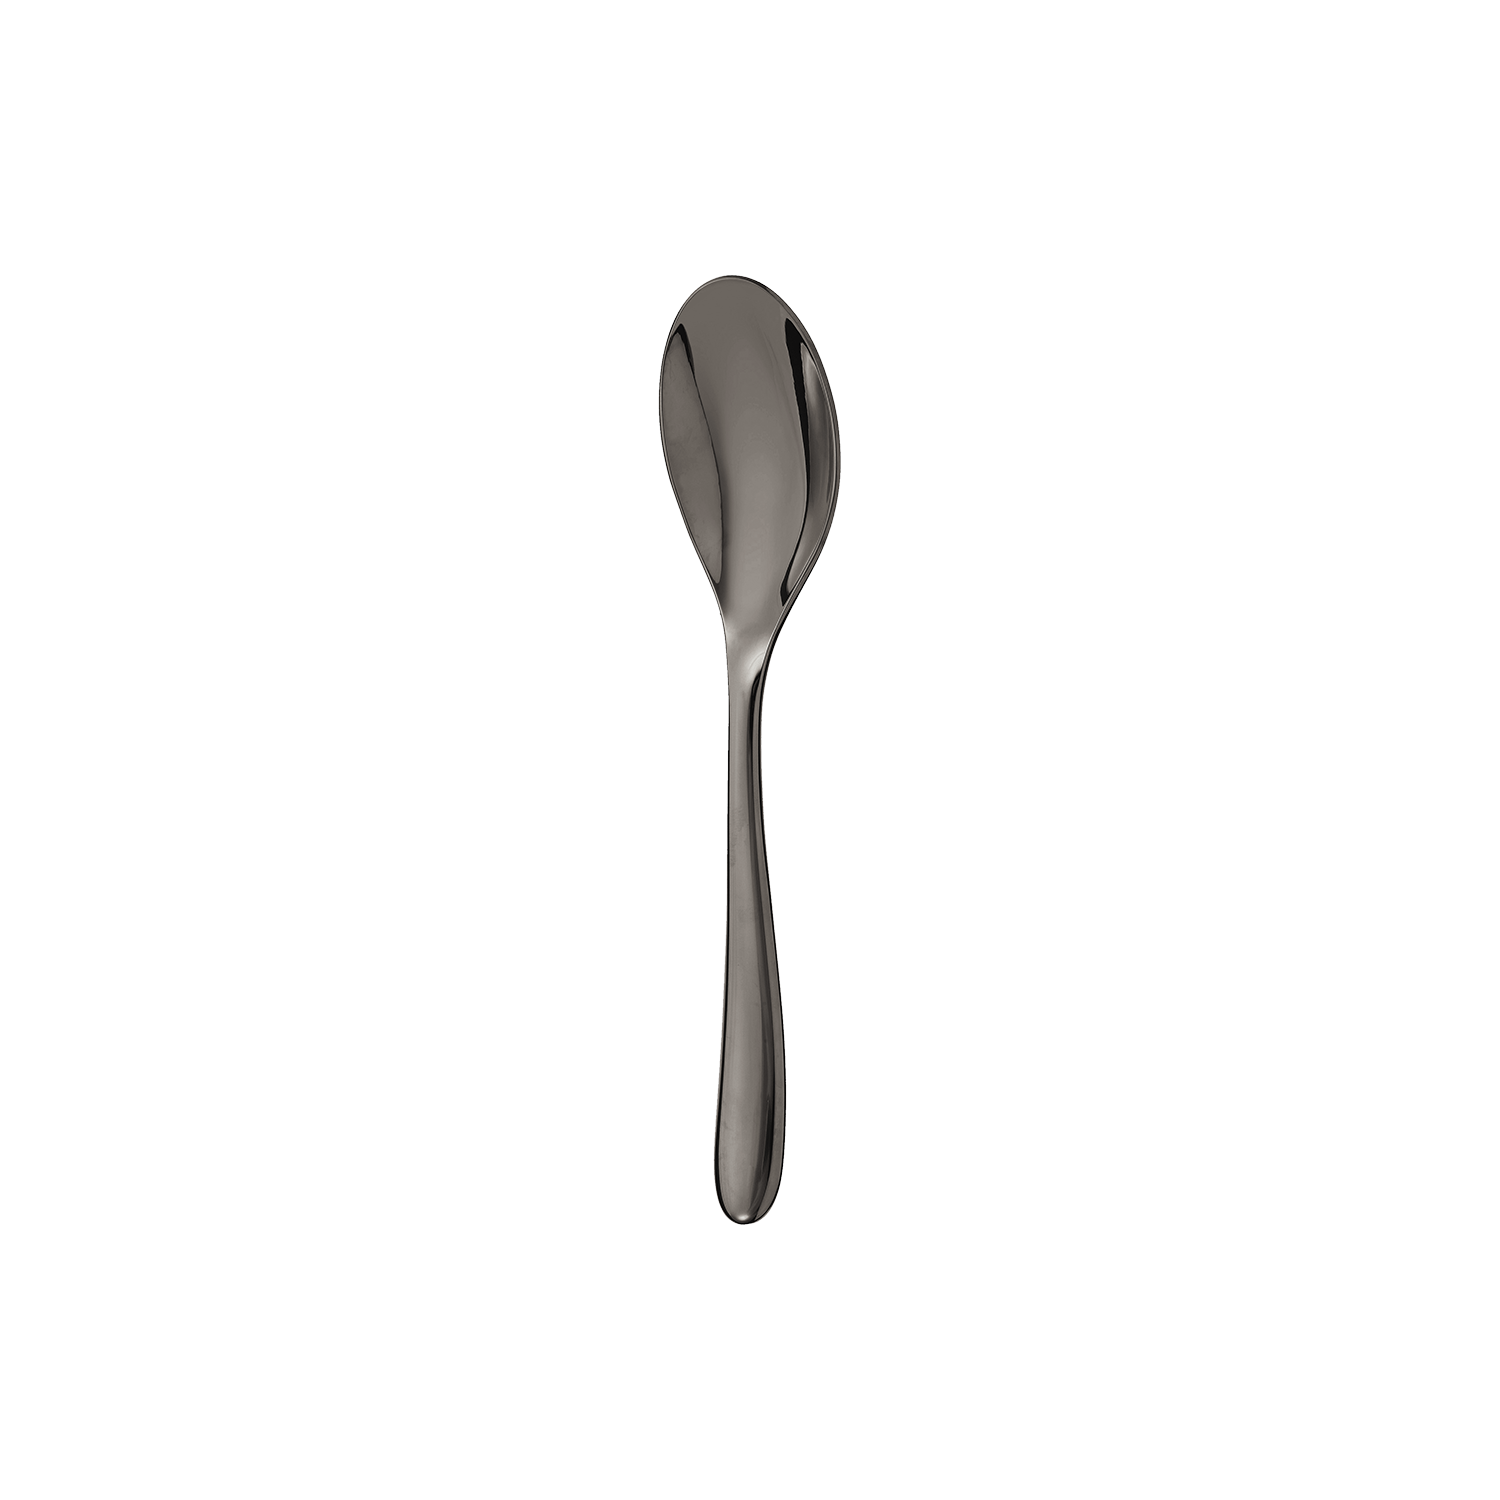 Black stainless steel coffee spoon